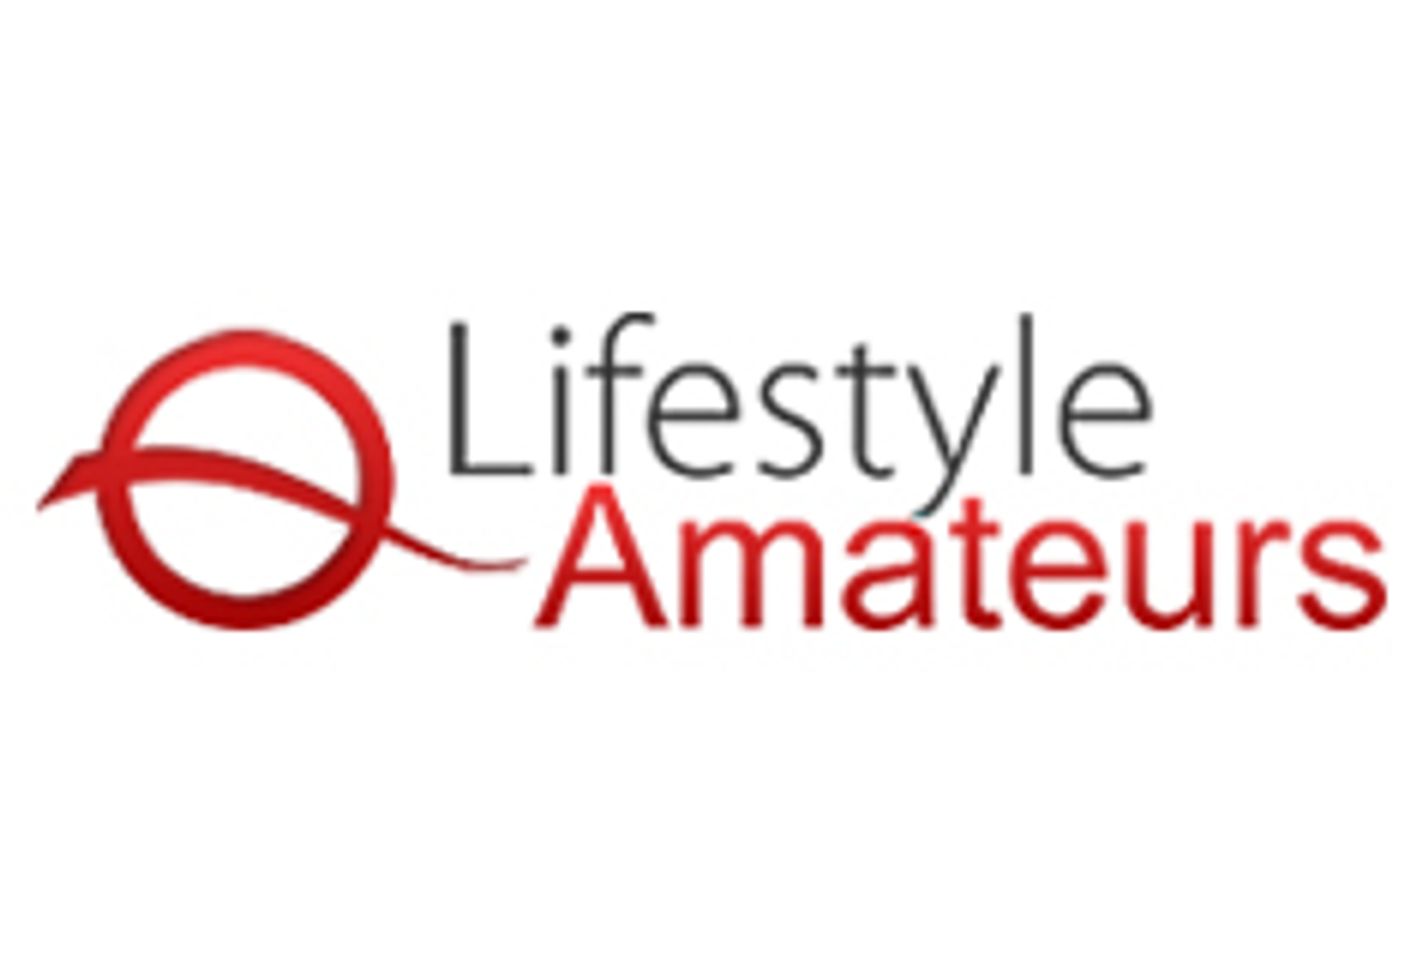 LifeStyle Amateurs Announces V2.1